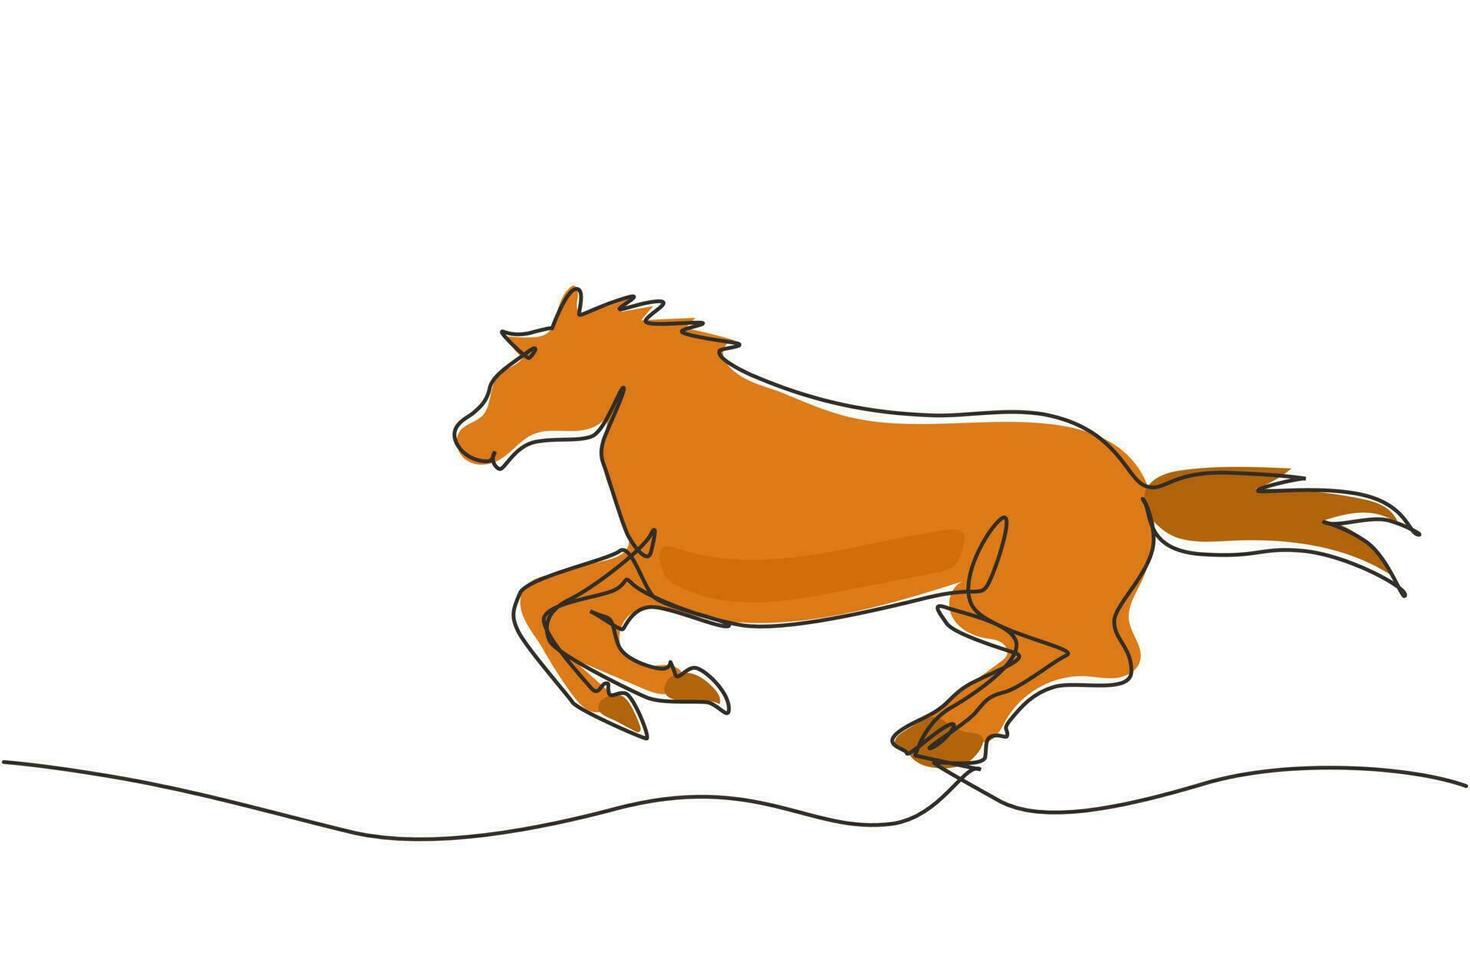 único desenho de uma linha, o cavalo branco orgulhoso anda graciosamente  com o casco dianteiro para a frente. Mustang selvagem galopa na natureza  livre. mascote animal forte. vetor gráfico de design de